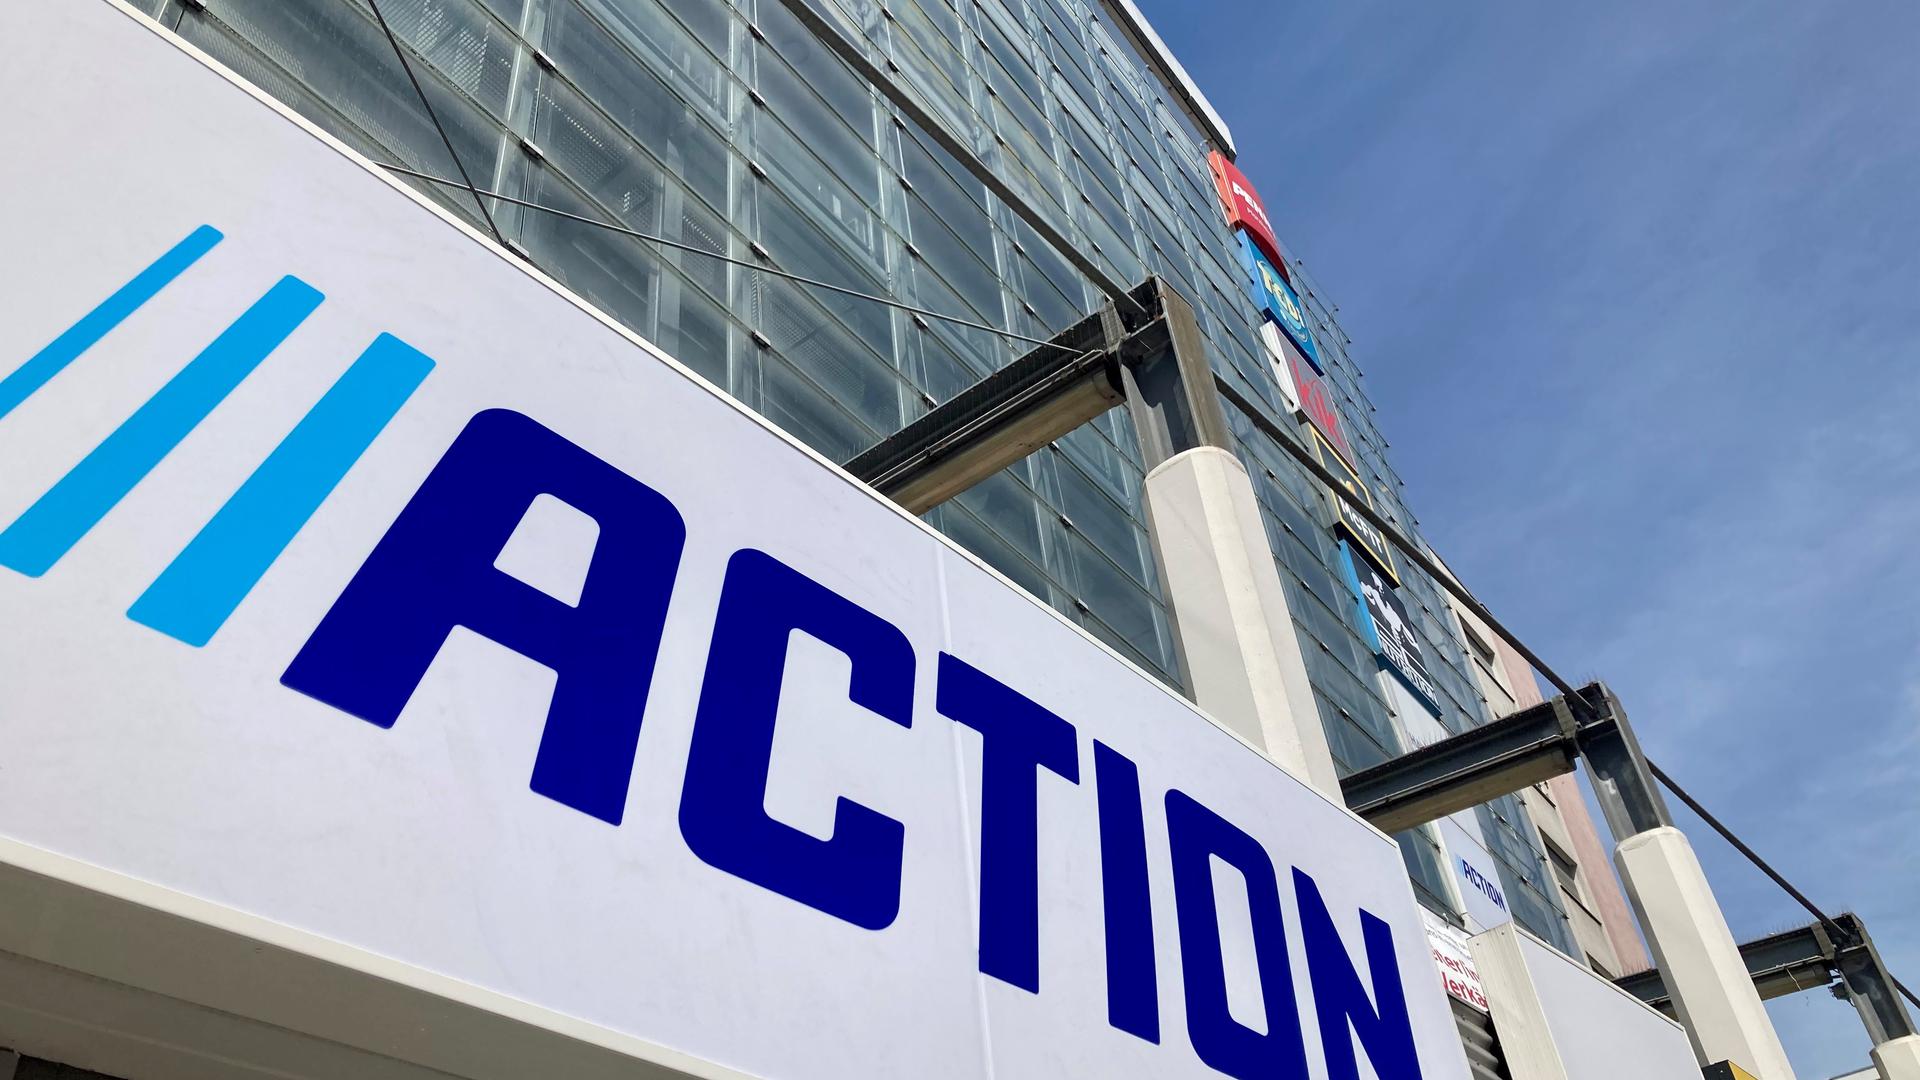 Der blaue Schriftzug des Unternehmens Action ist schon an der Fassade des Einkaufszentrums G19 in der Goethestraße sichtbar.